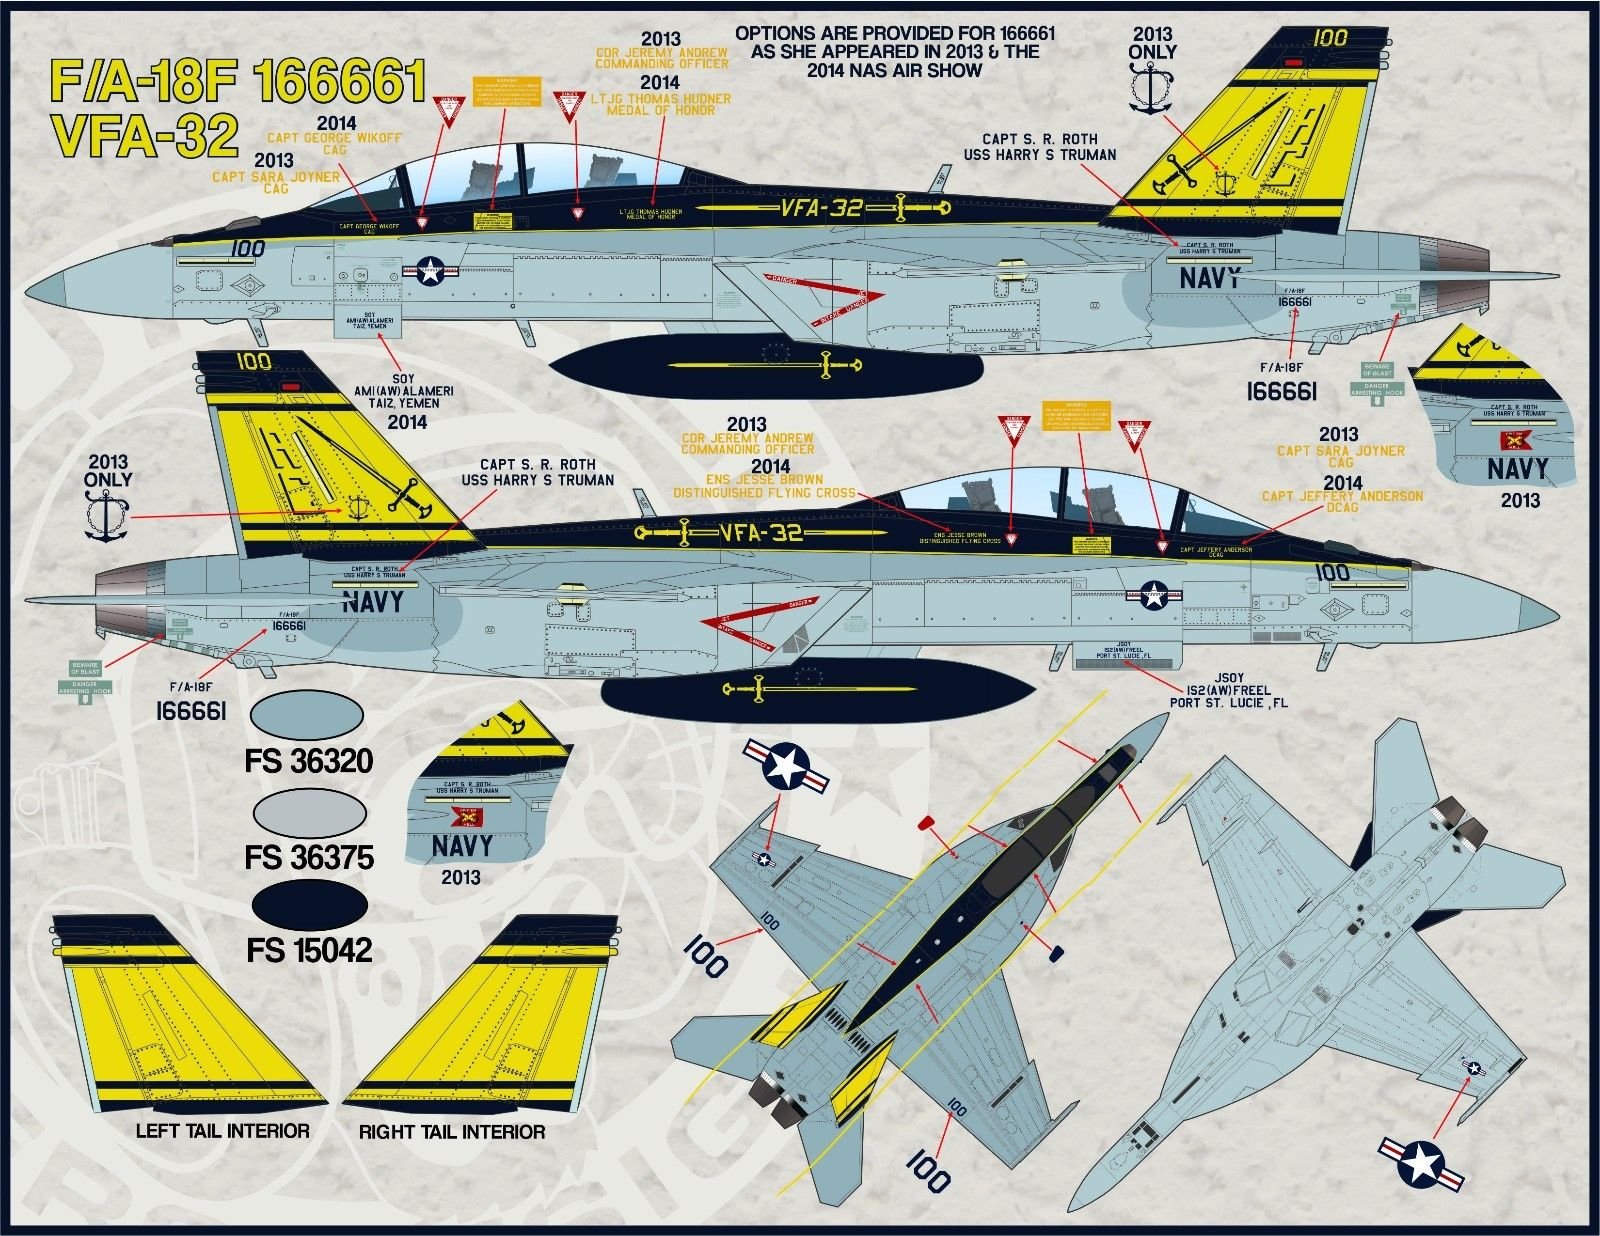 1/48 F/A-18 大黄蜂航空联队全明星"2014海洋航展回顾"